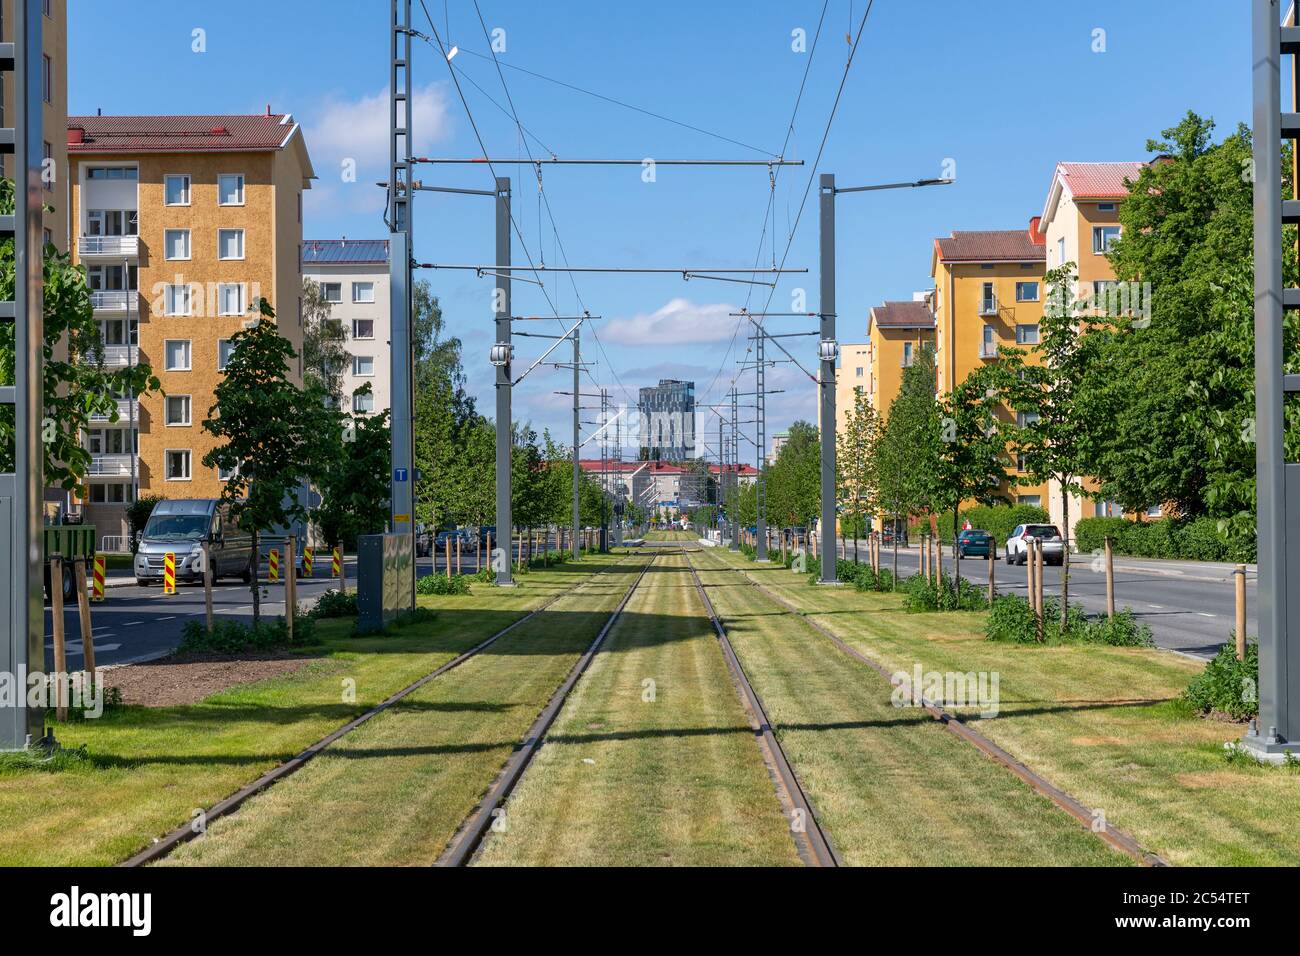 La ville de Tampere construit un réseau de tramways pour améliorer ses transports en commun. Les constructions ont causé le chaos dans la circulation mais aide à long terme. Banque D'Images